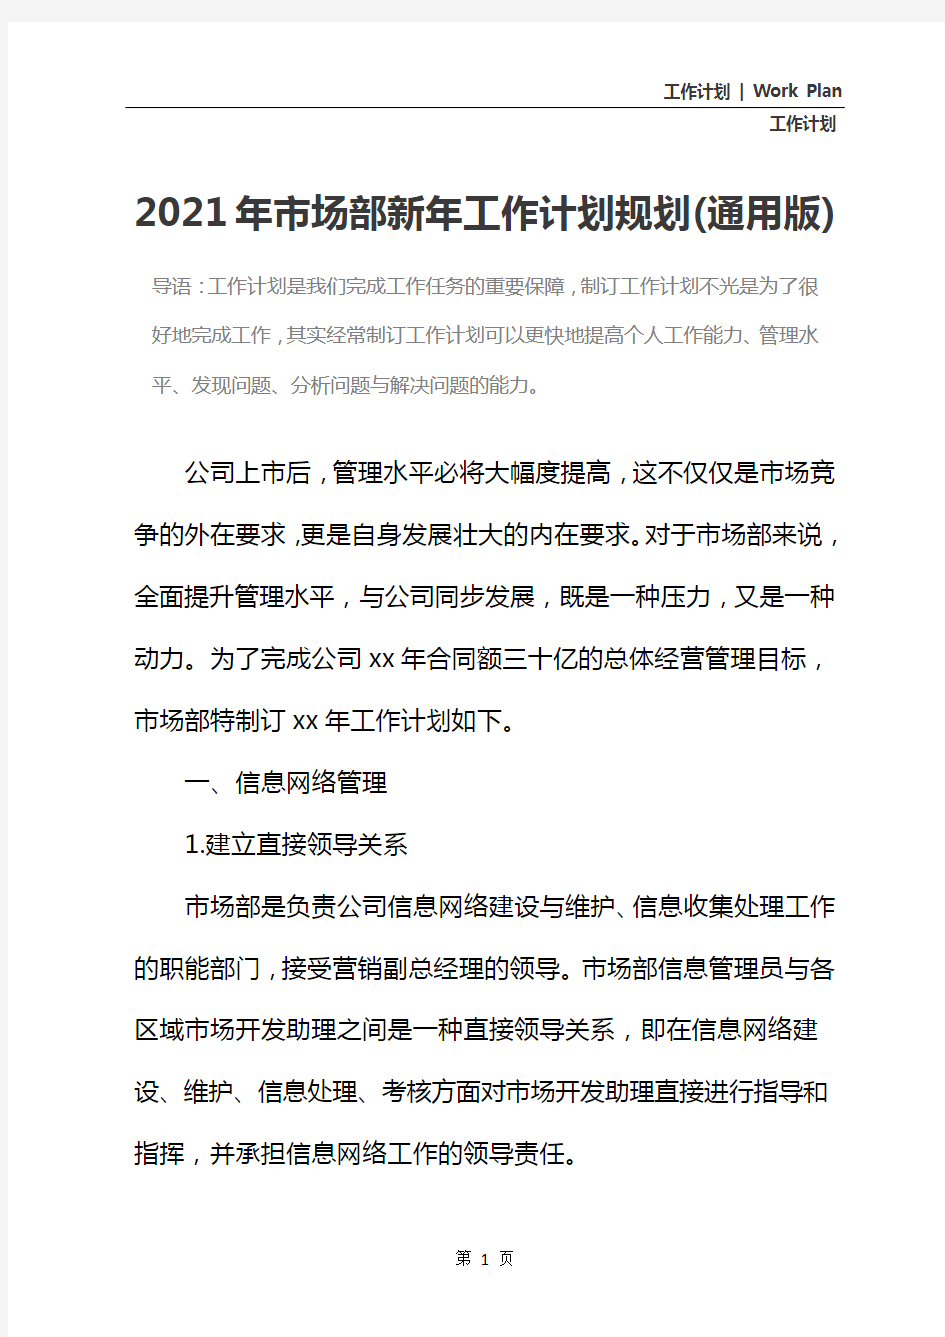 2021年市场部新年工作计划规划(通用版)